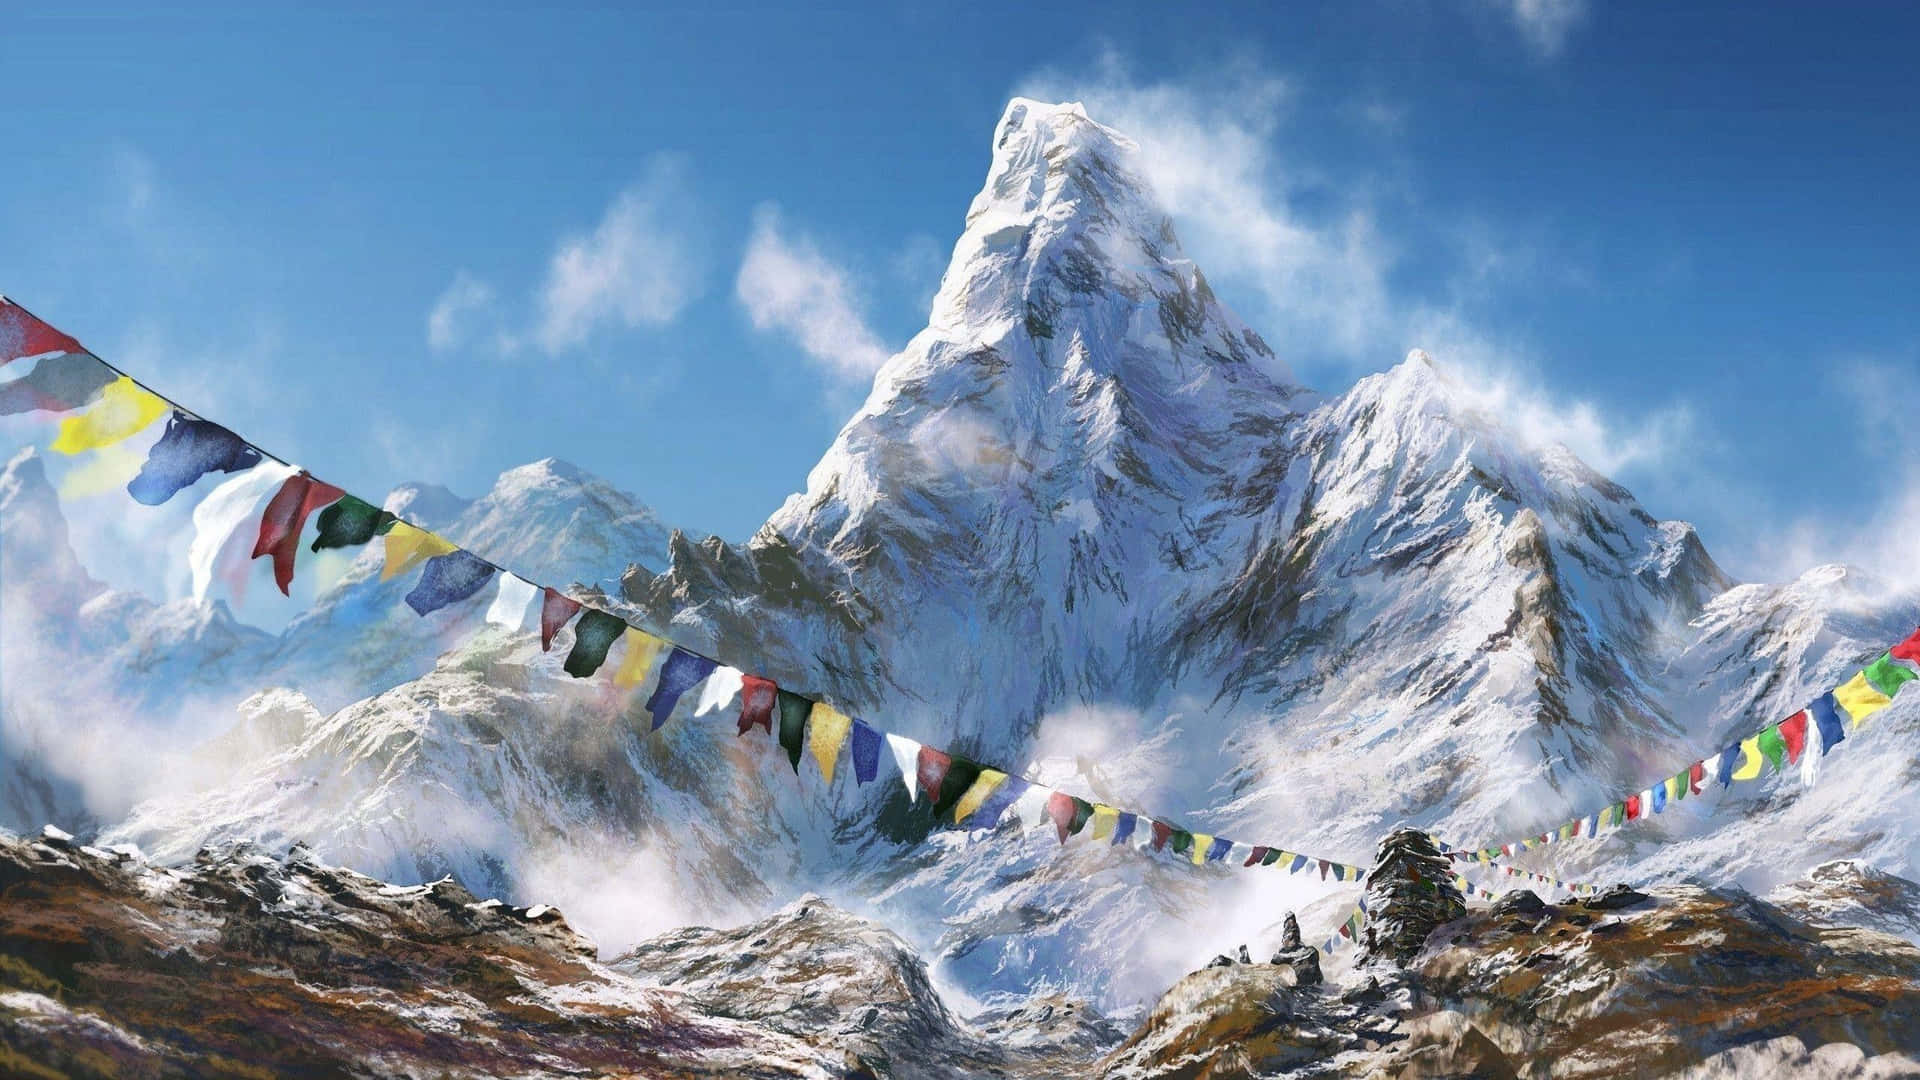 Attta In Den Fantastiska Utsikten Av Den Fantastiska Himalayabergen.